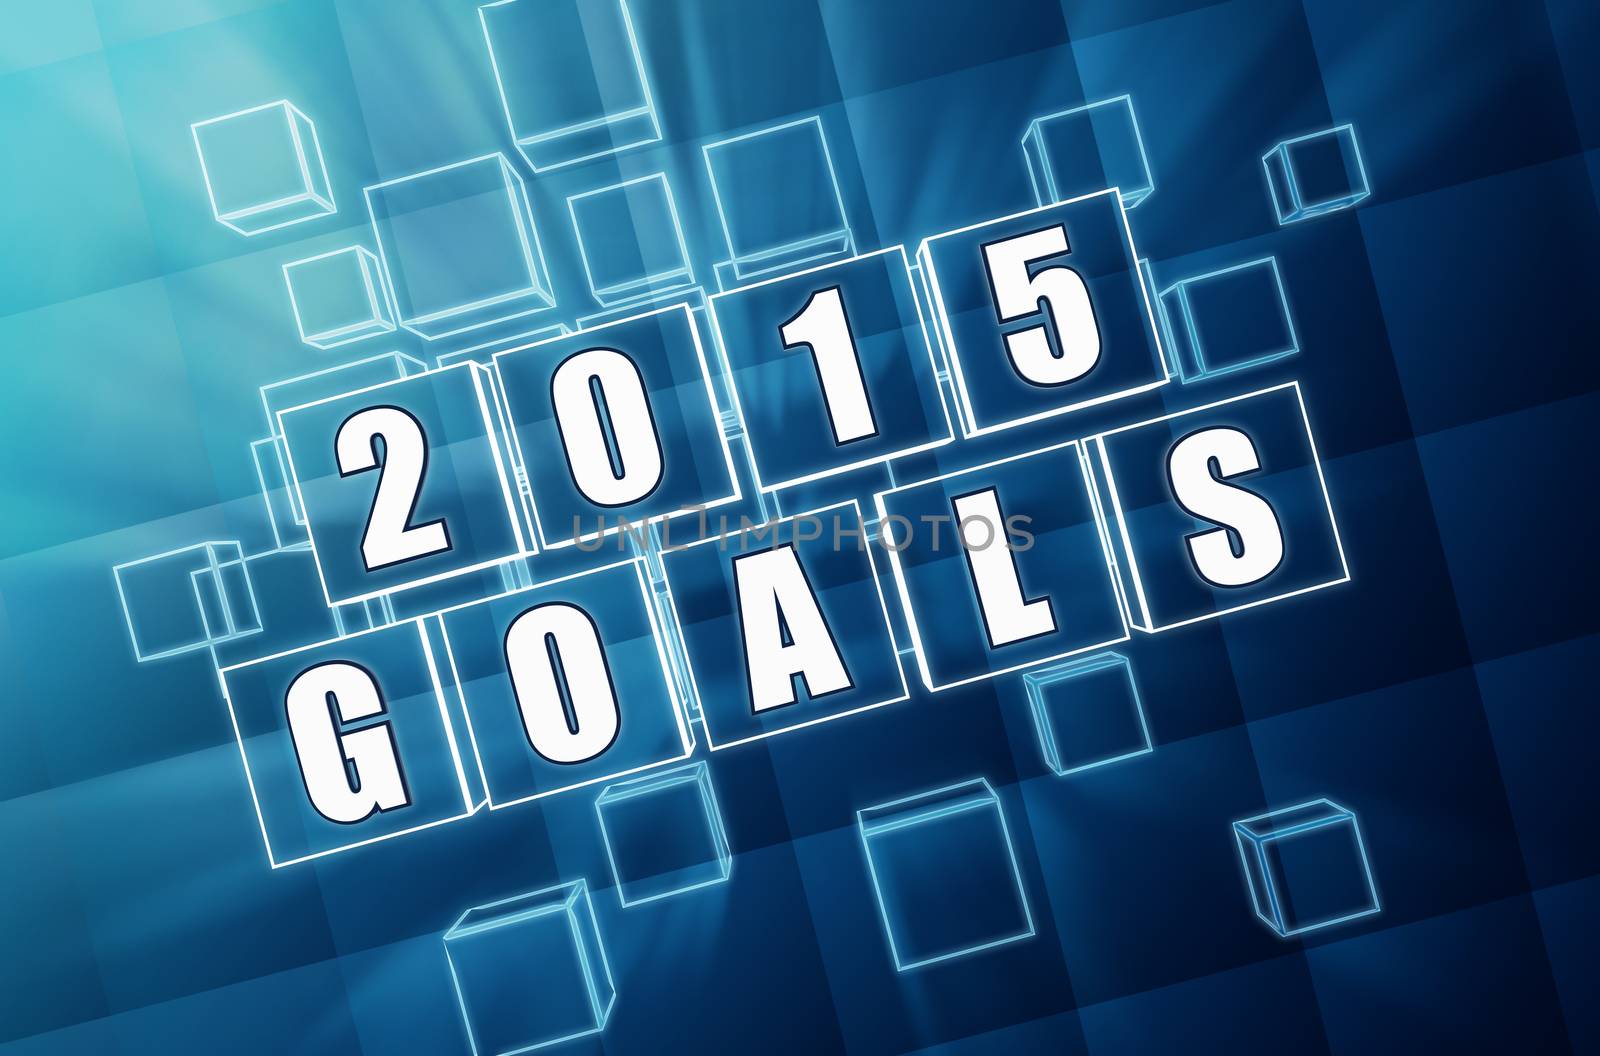 2015 goals by marinini